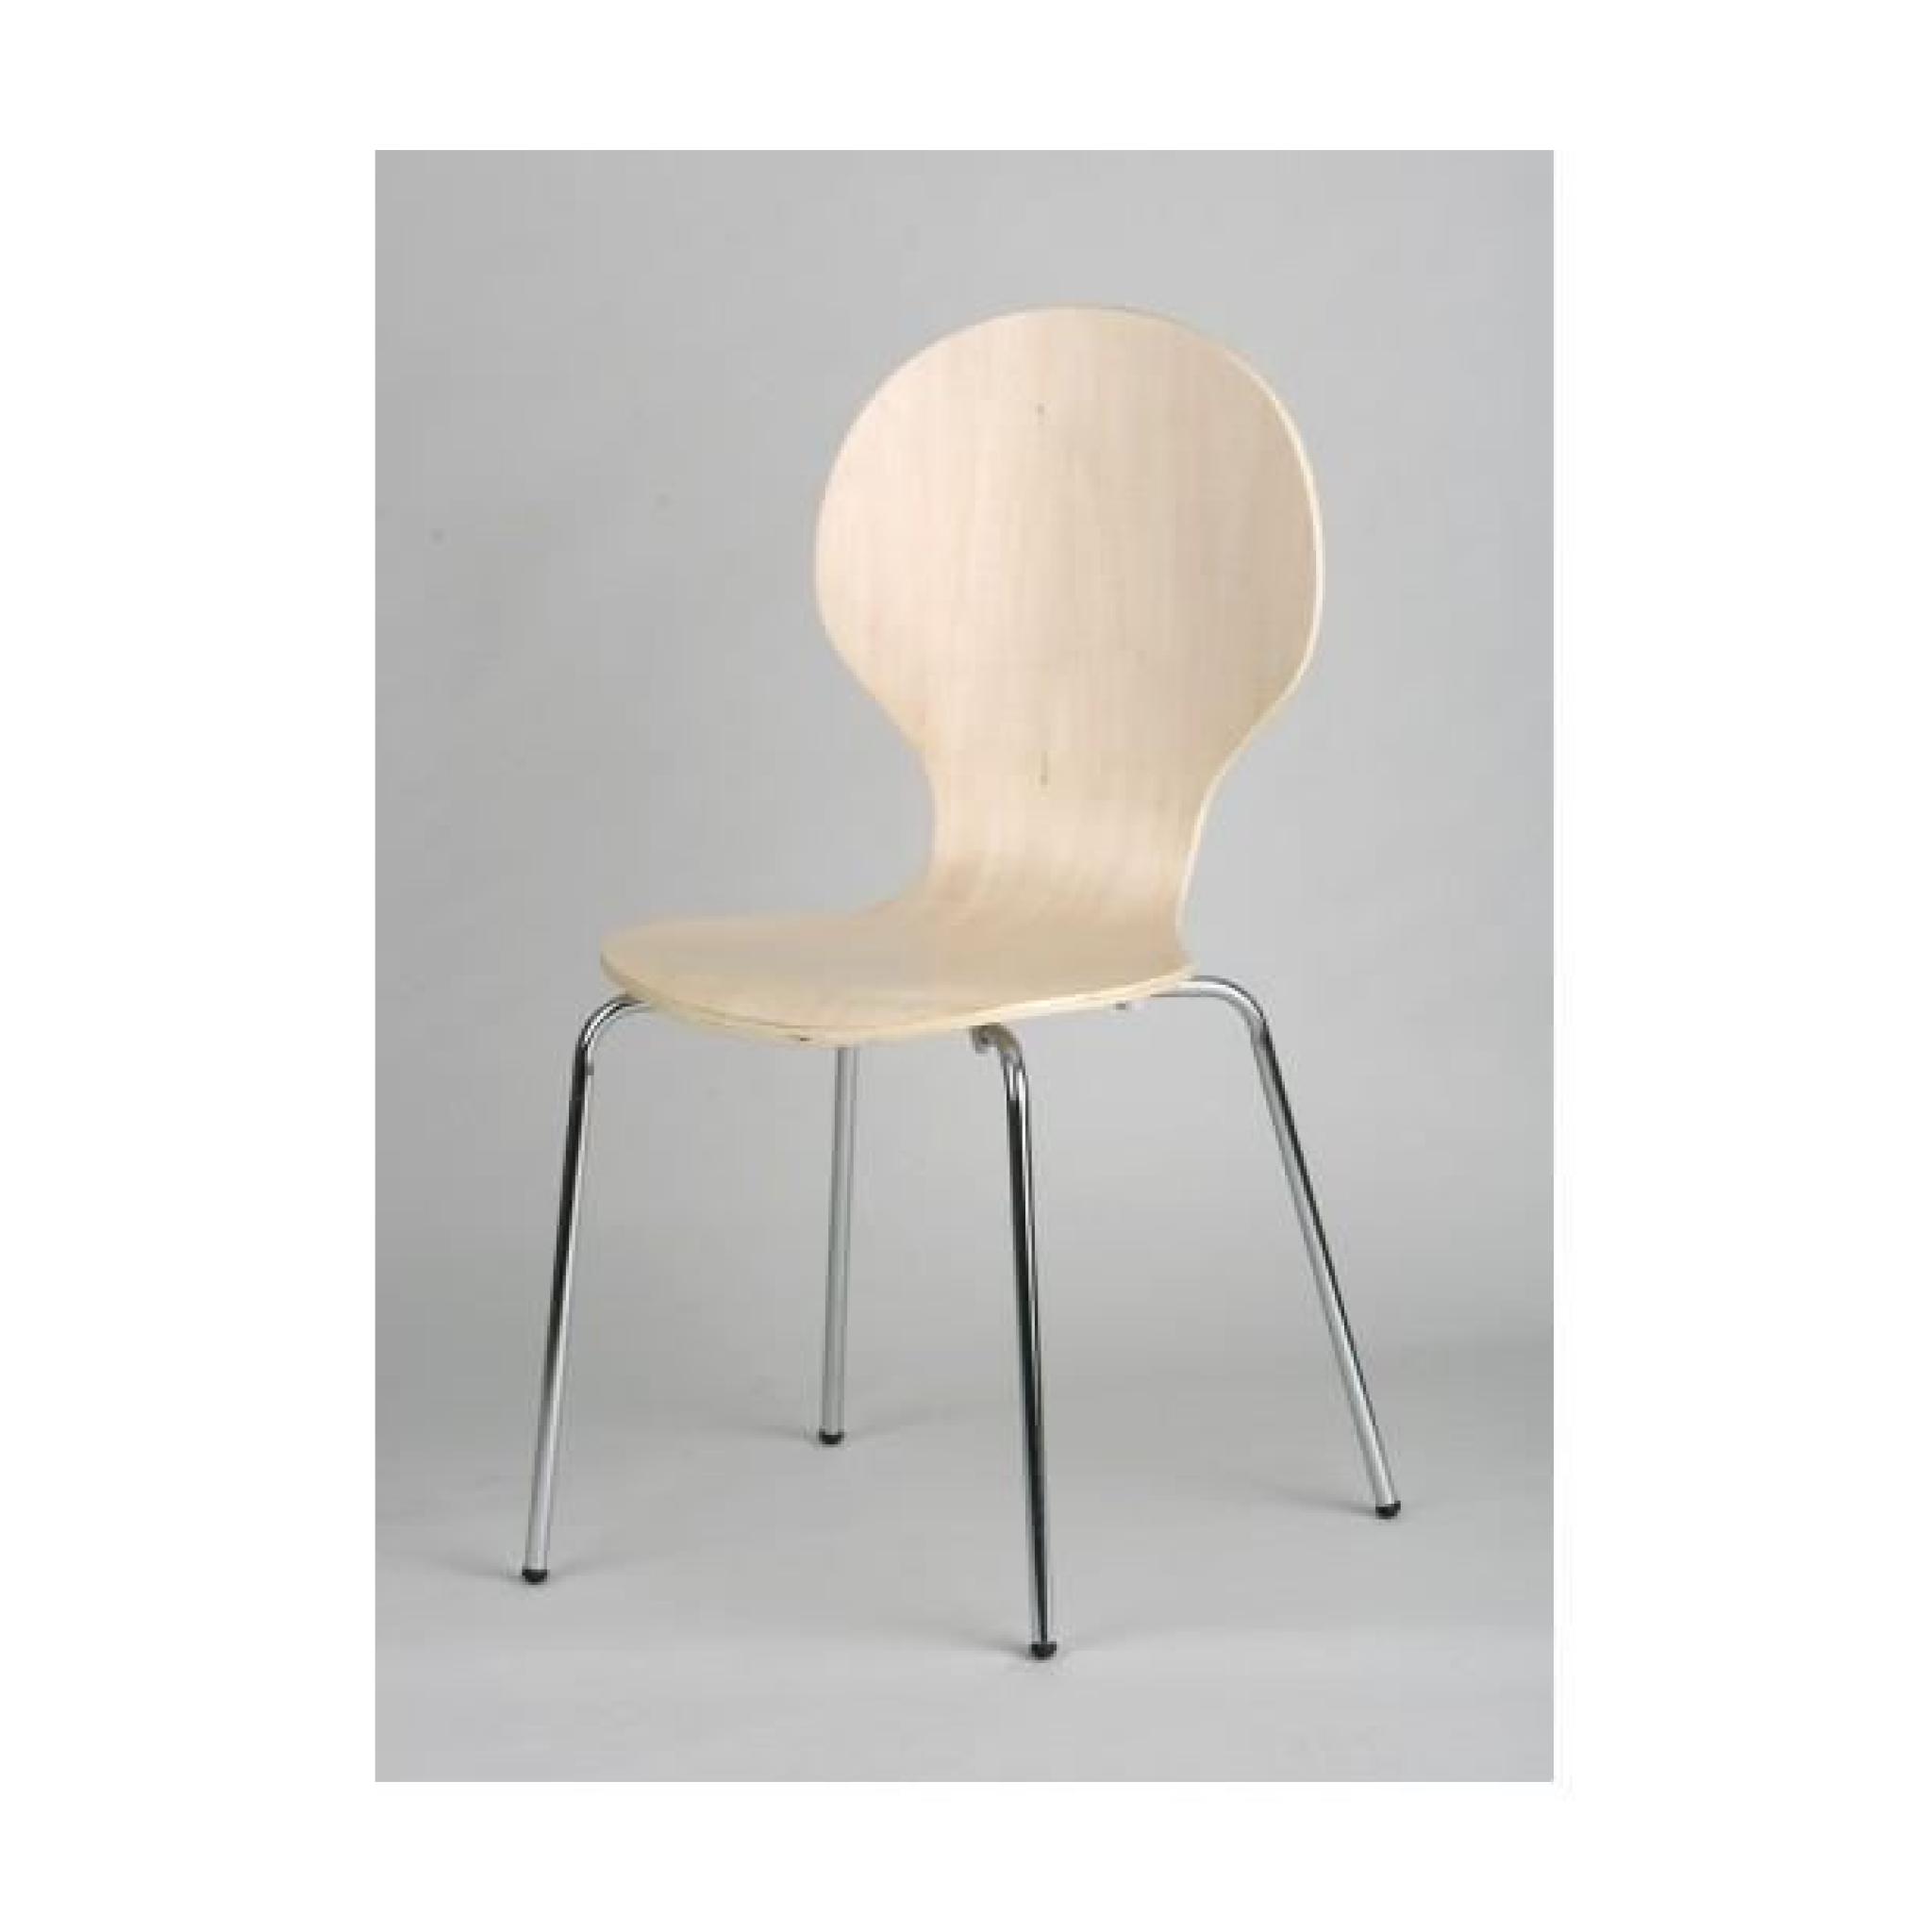 4 chaises bois laminé - teinte naturel - structure métal chromé 